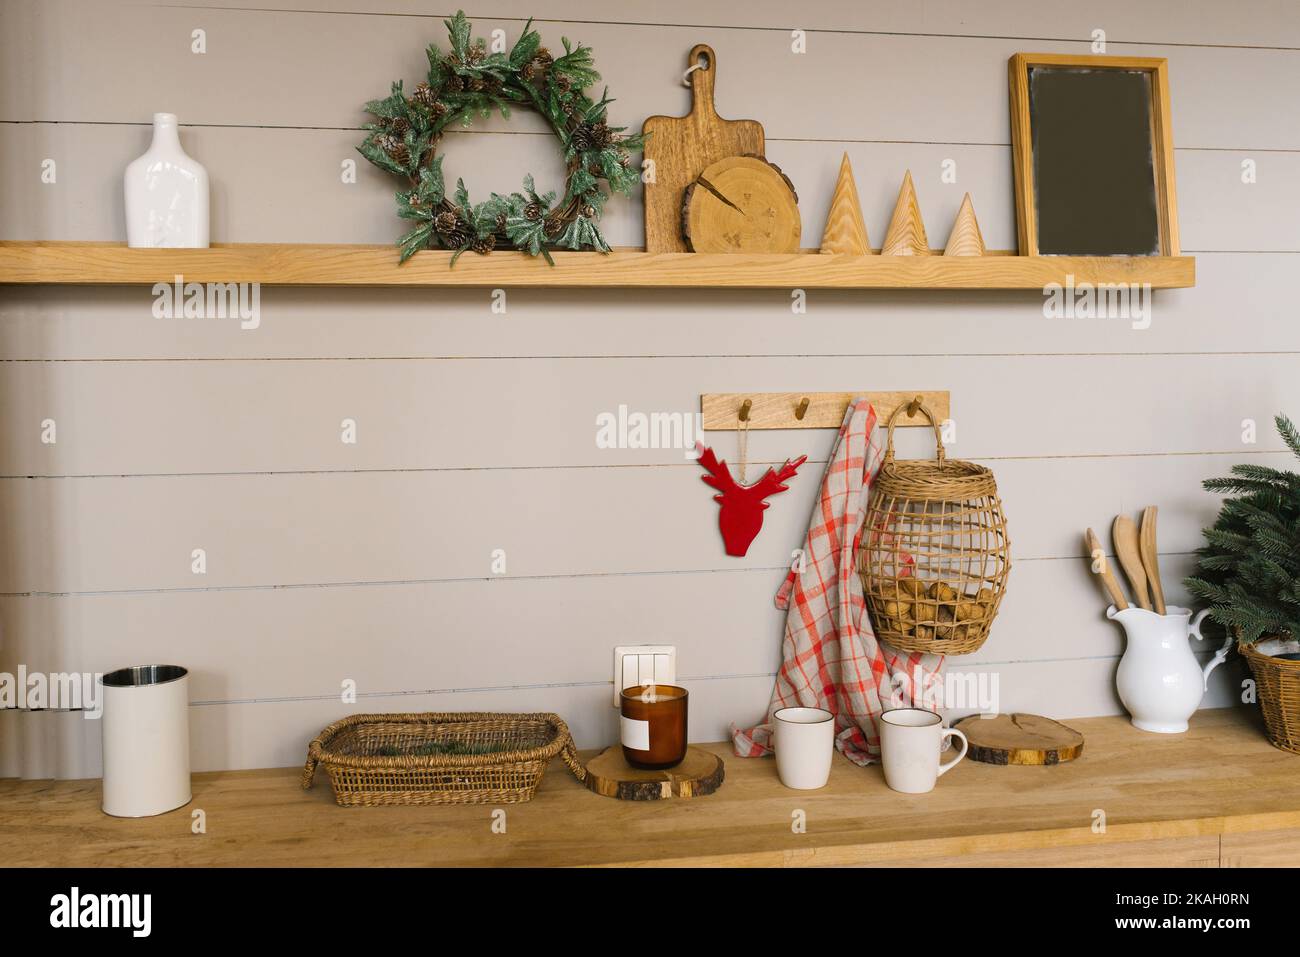 Interior de cocina escandinava con decoración navideña y accesorios Foto de stock